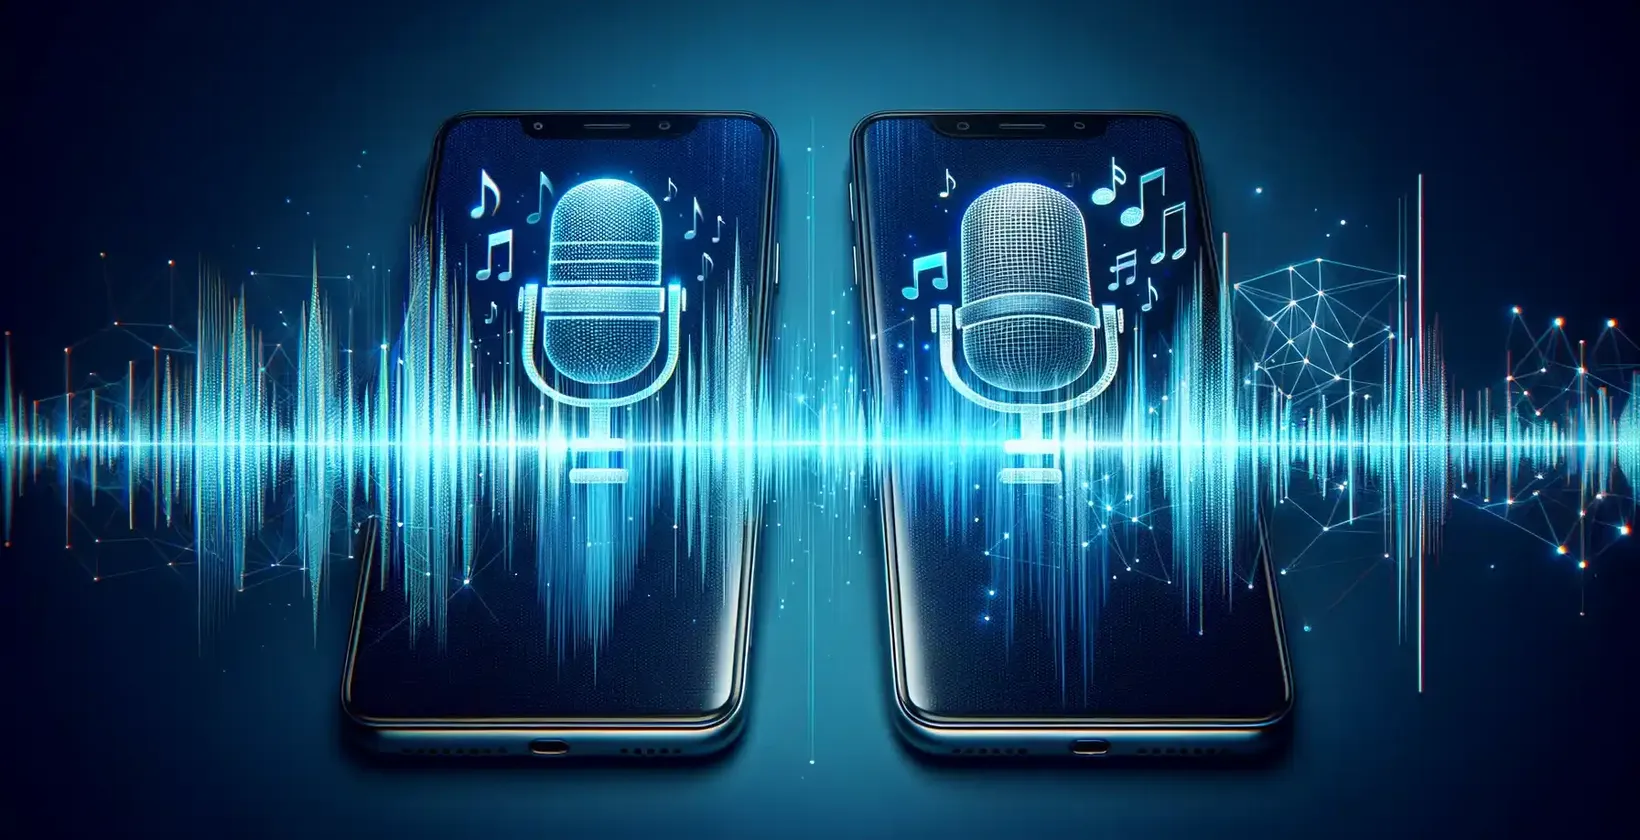 Dua telefon pintar mempamerkan ikon mikrofon bertenaga di tengah-tengah bentuk gelombang digital, melambangkan perkhidmatan transkripsi